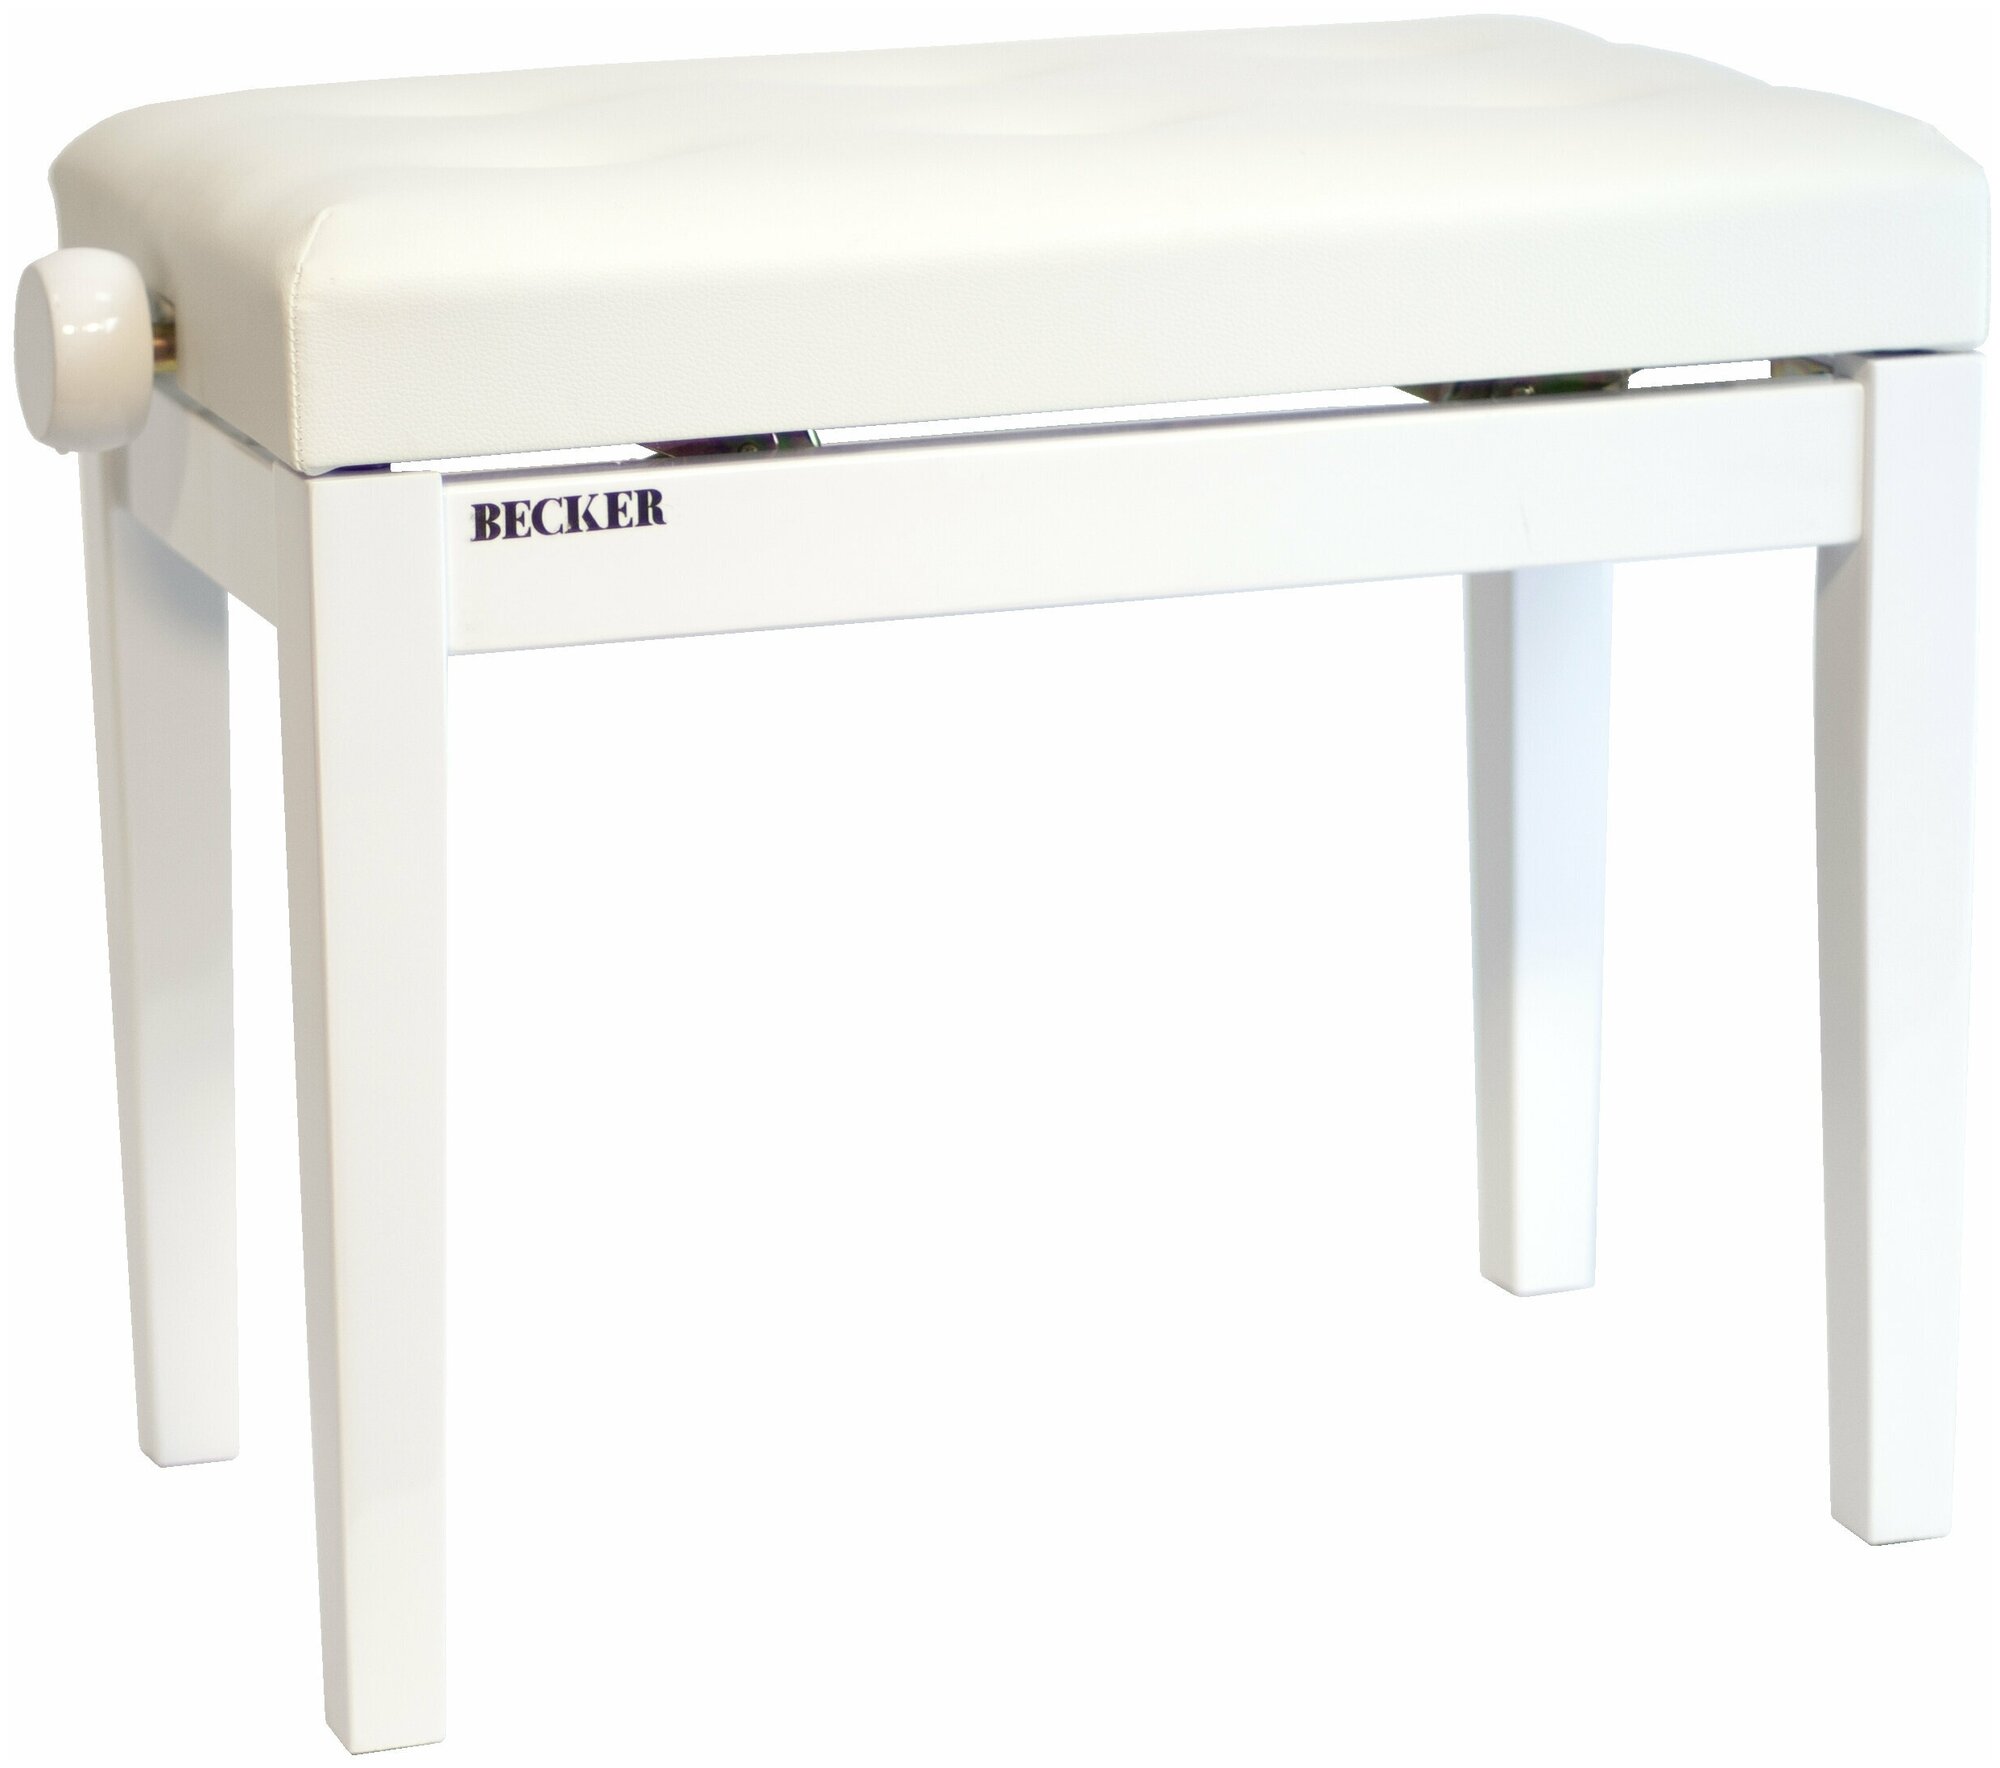 Becker PB-2PW/WL - Банкетка для фортепиано, белая полированная, сидение белая эко кожа, подъемный механизм регулировки высоты